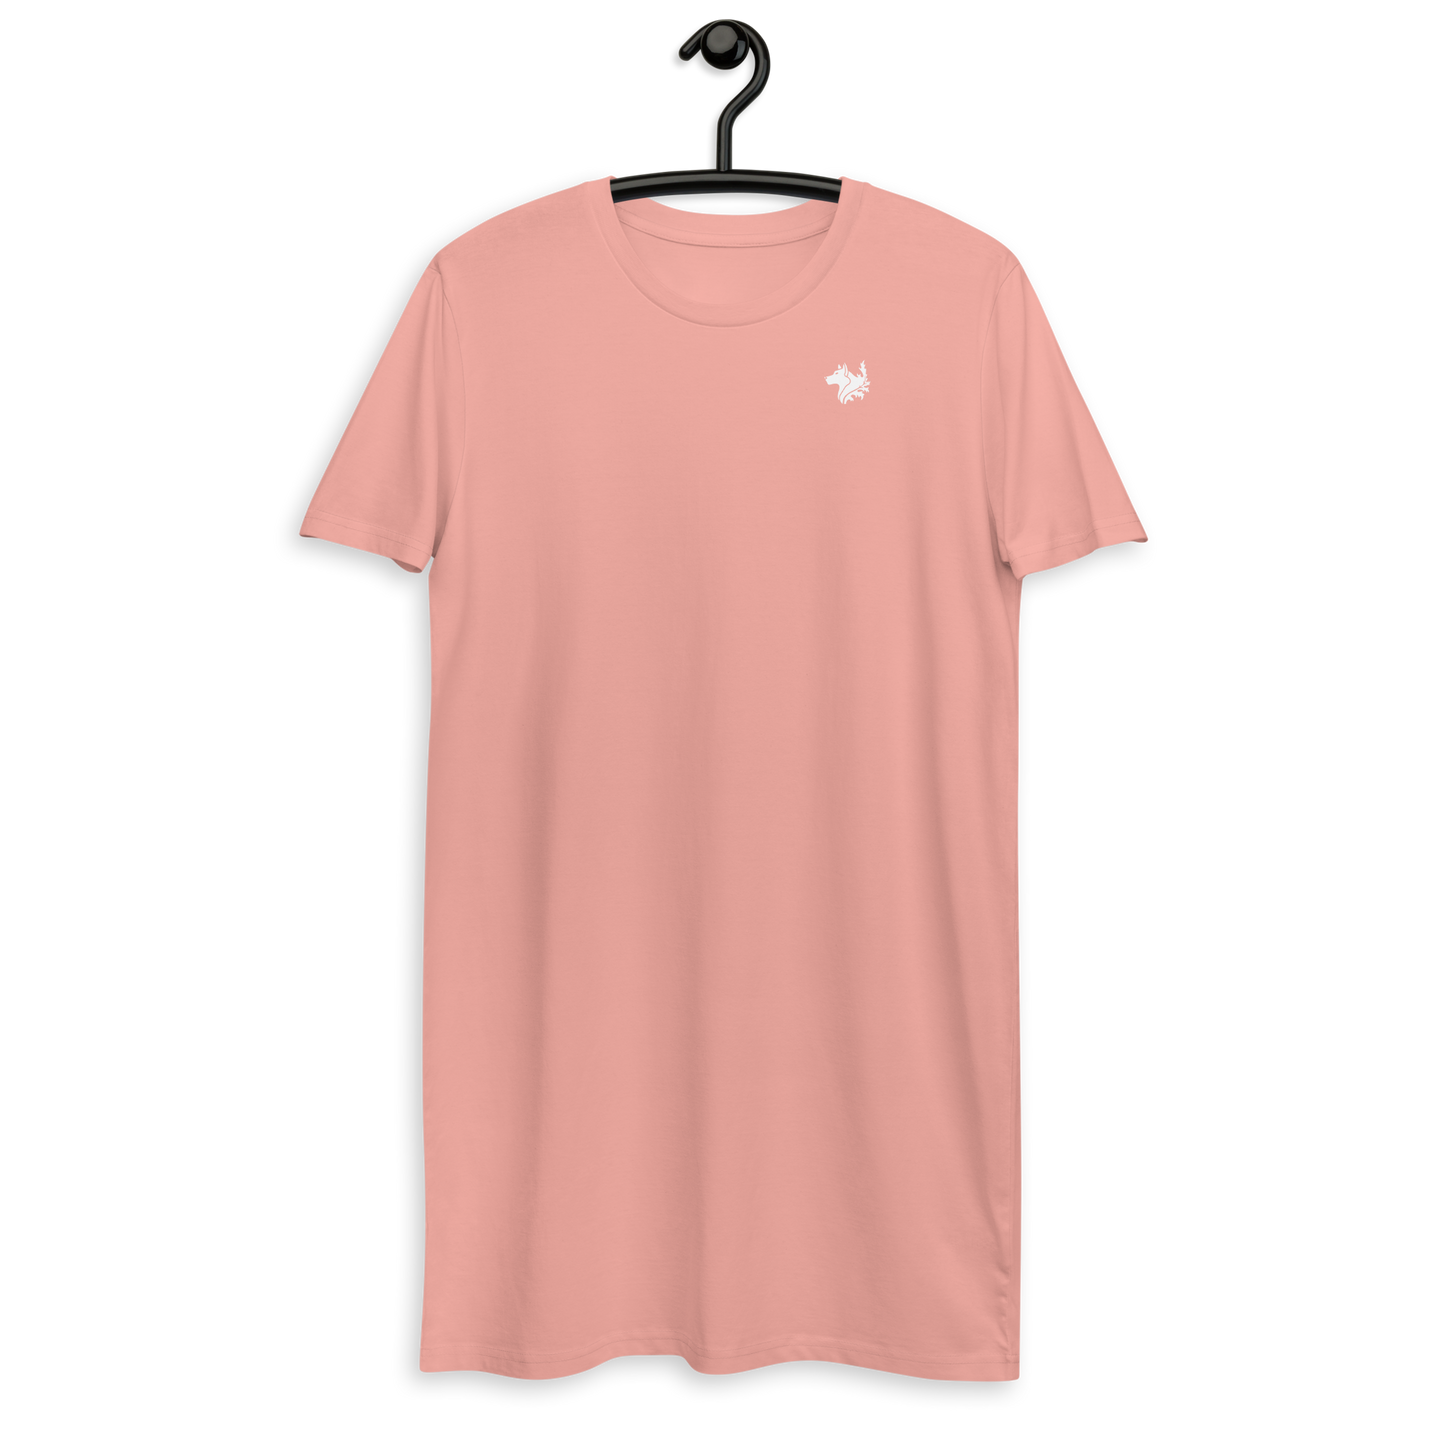 Pink Women's Organic Cotton T-shirt Dress